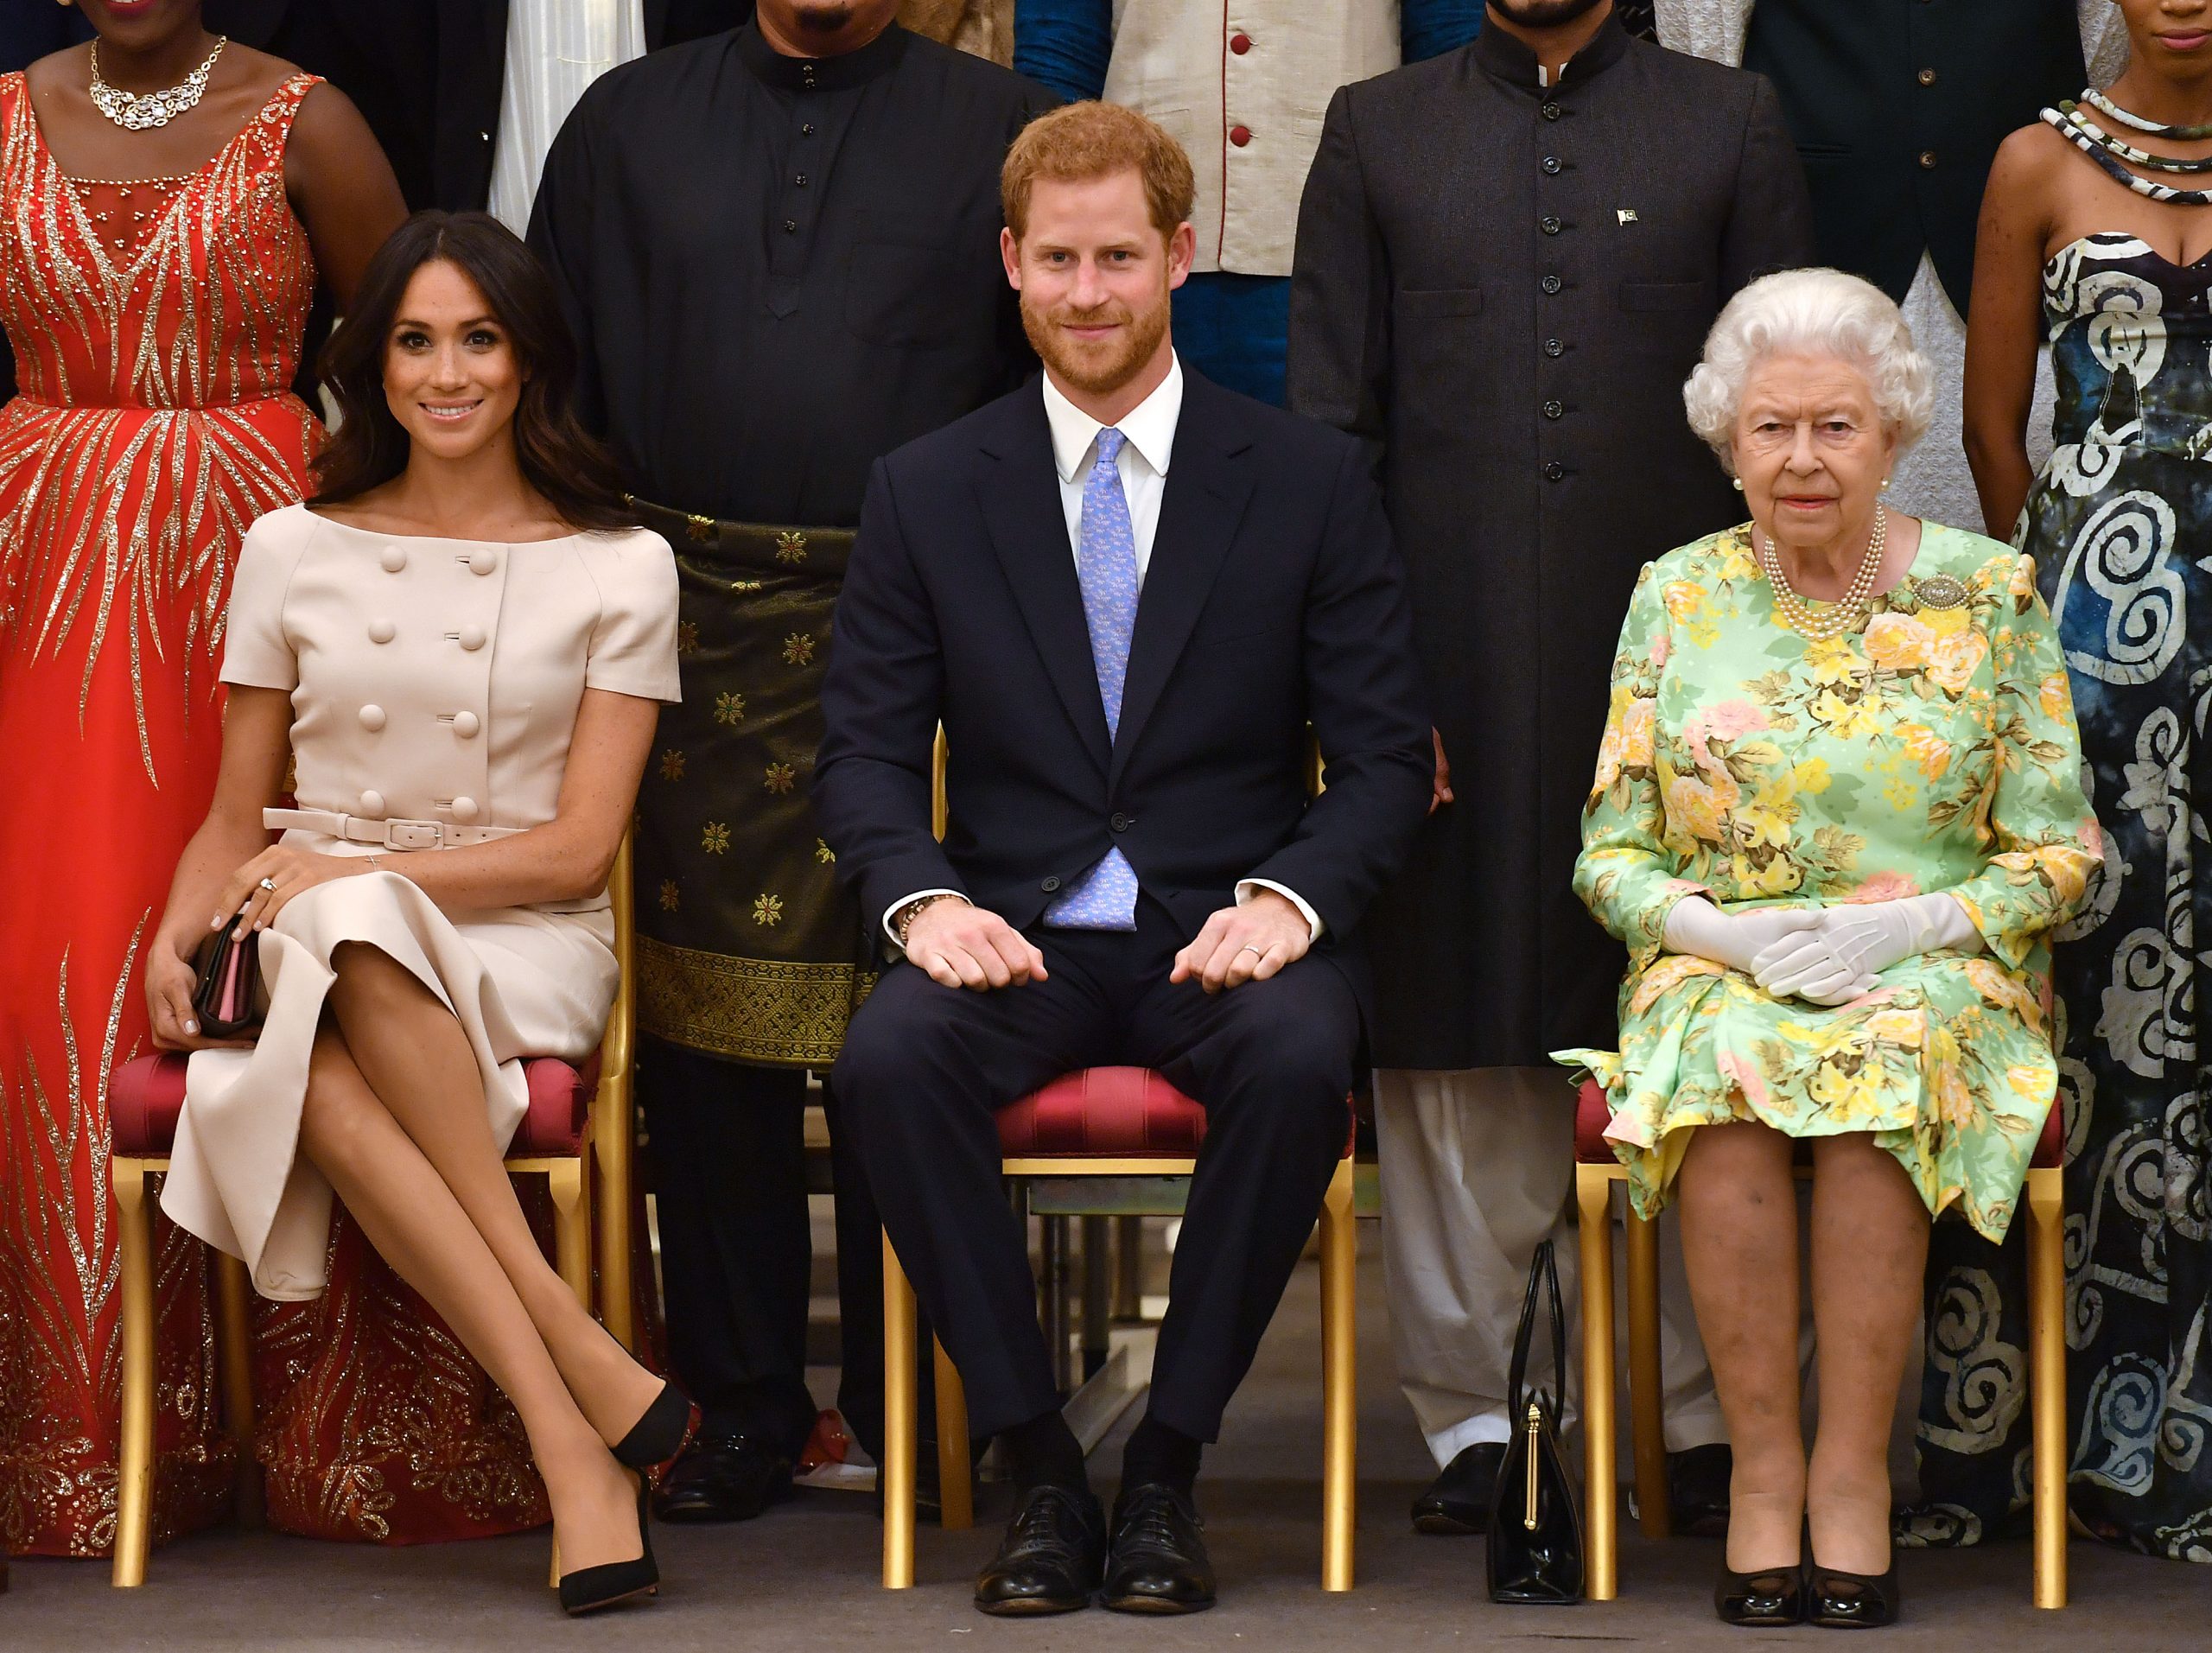 La reina Elizabeth II solicitó reunirse con el príncipe Harry para limar asperezas y «reconectar» las relaciones